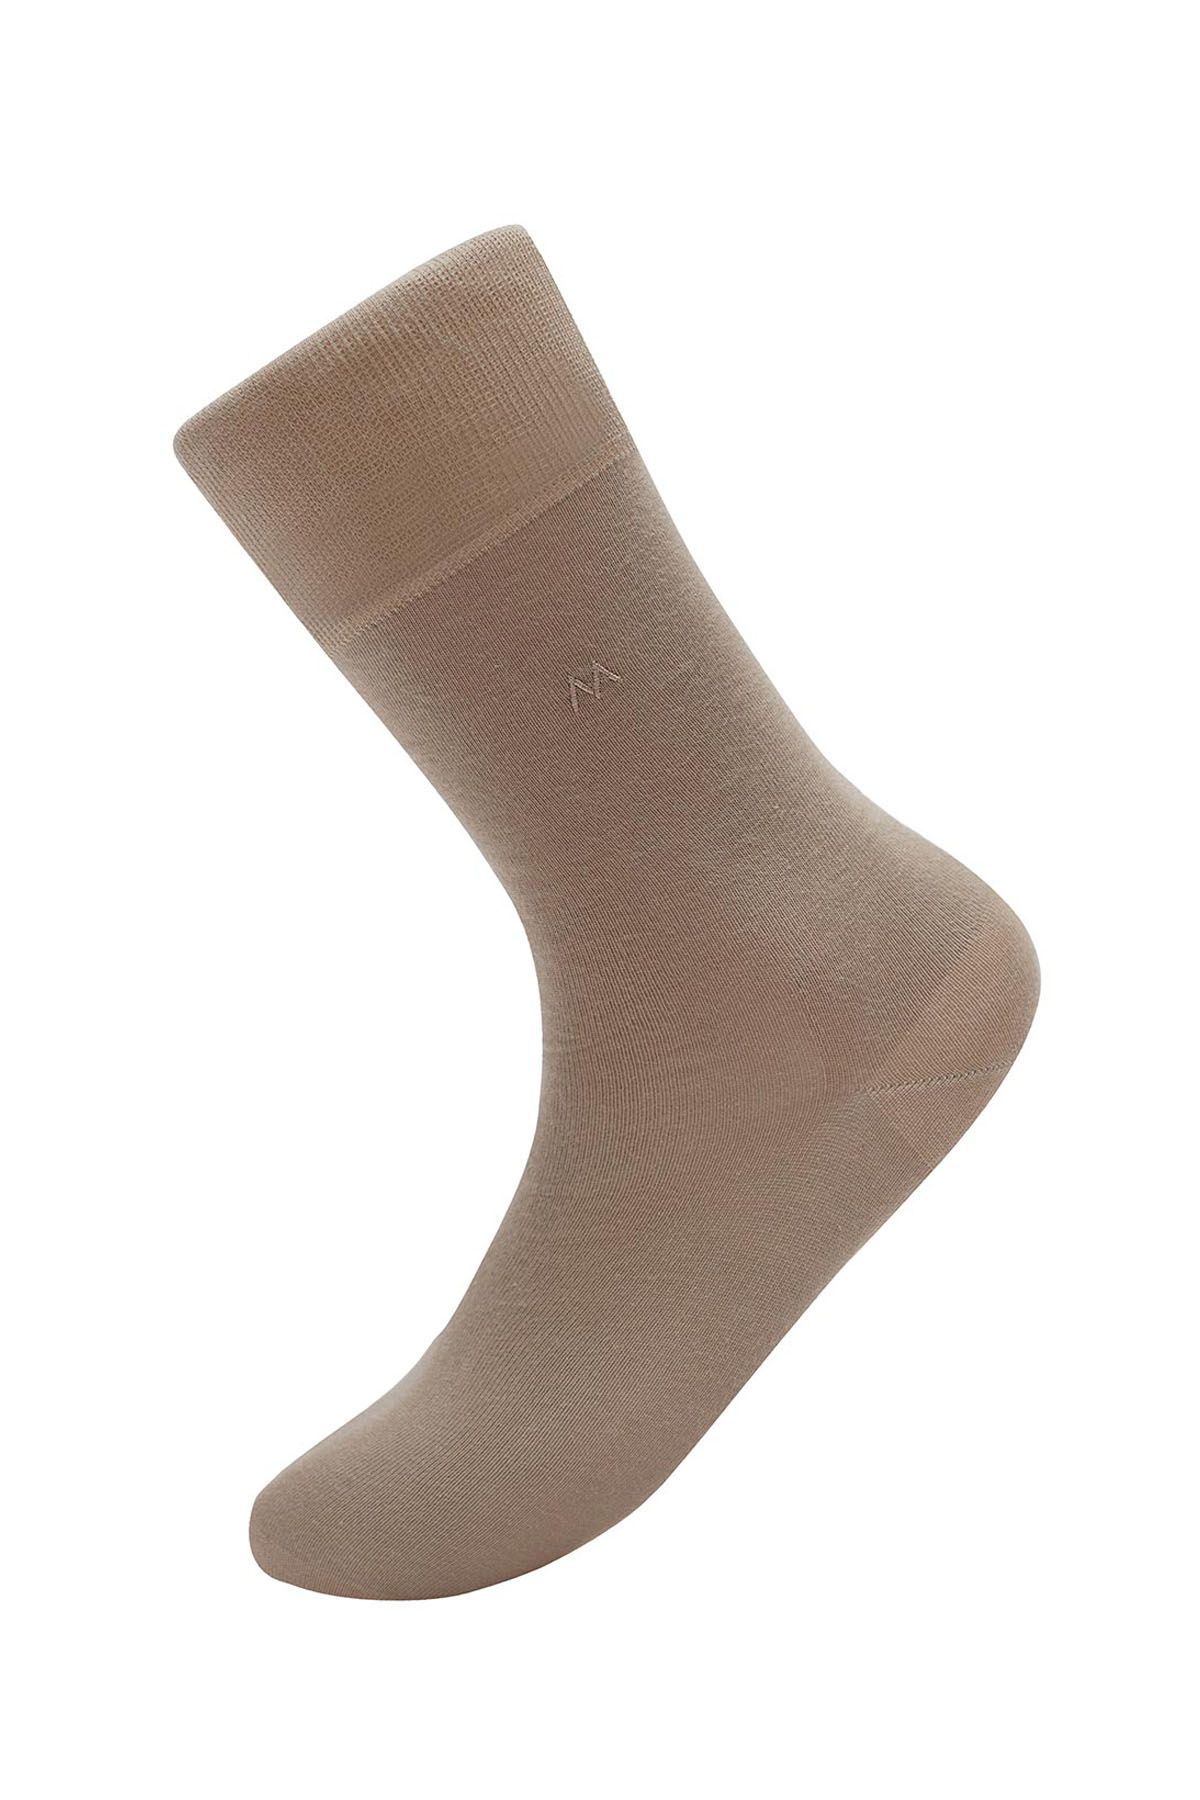 Hemington Kum Rengi Pamuklu Yazlık Çorap